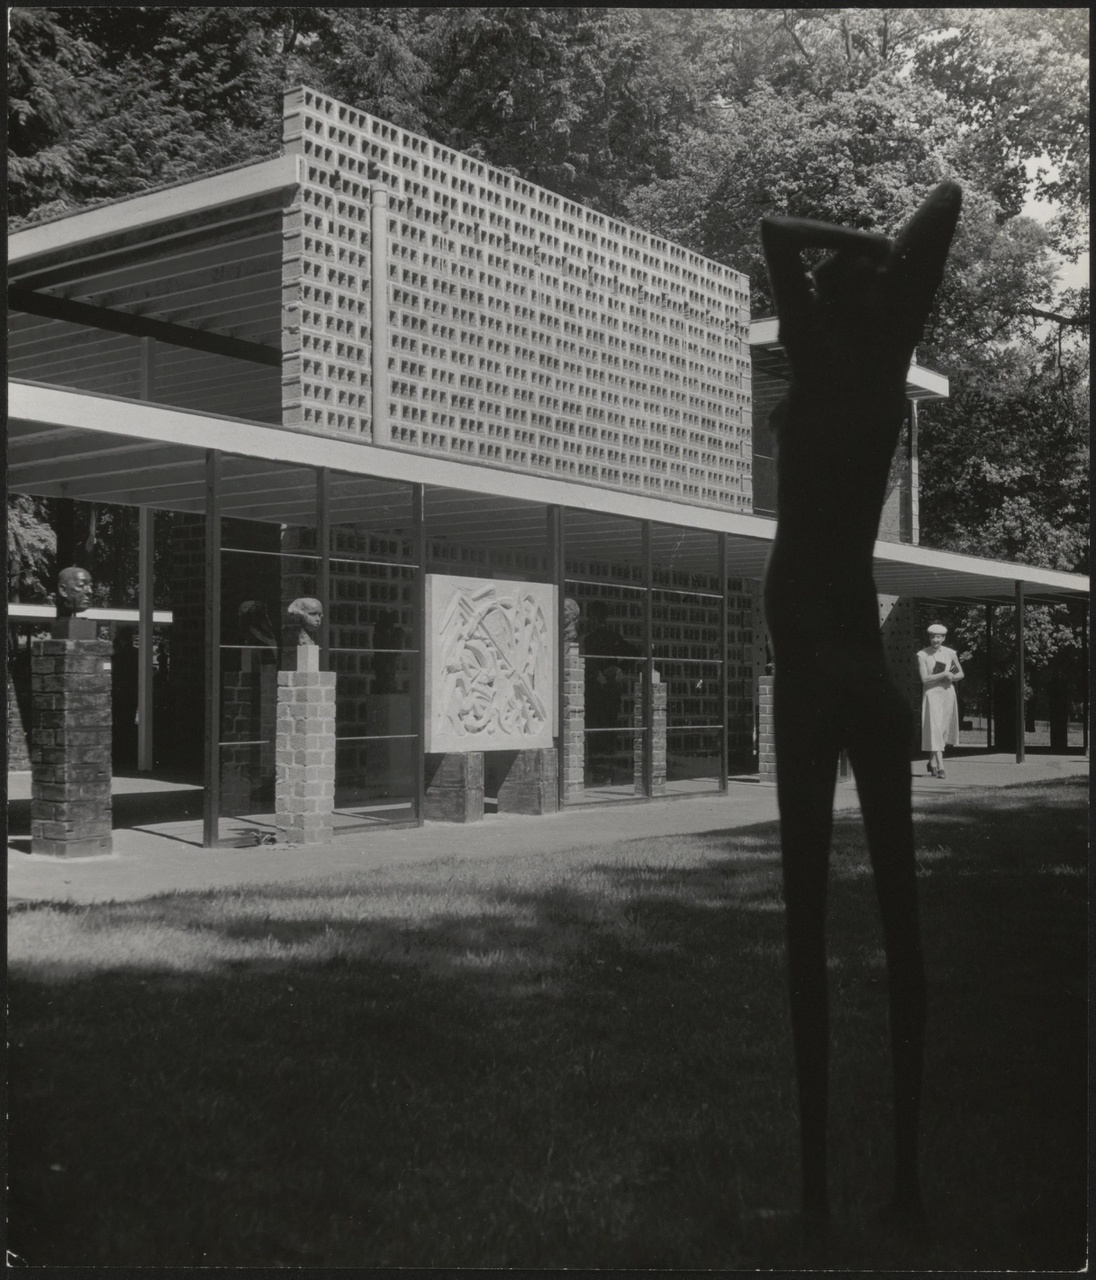 Afbeelding van expo-paviljoen Sonsbeek, ca.1955, zuid-west kant met strekkend beeld